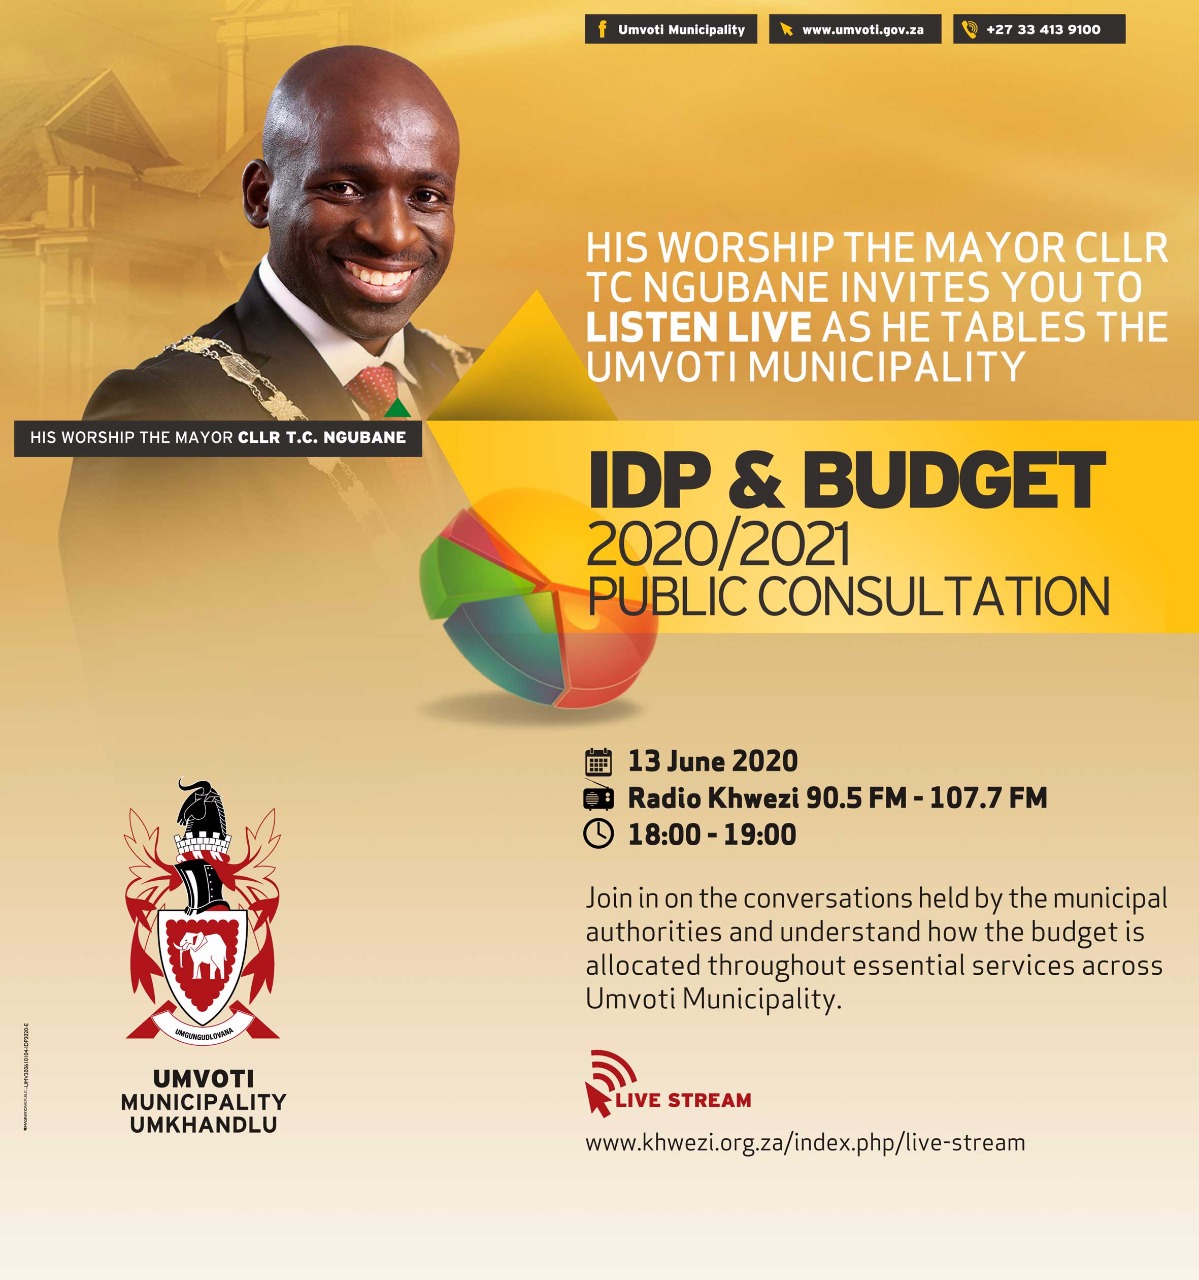 IPD & Budget 2020/2021 - Umvoti Municipality